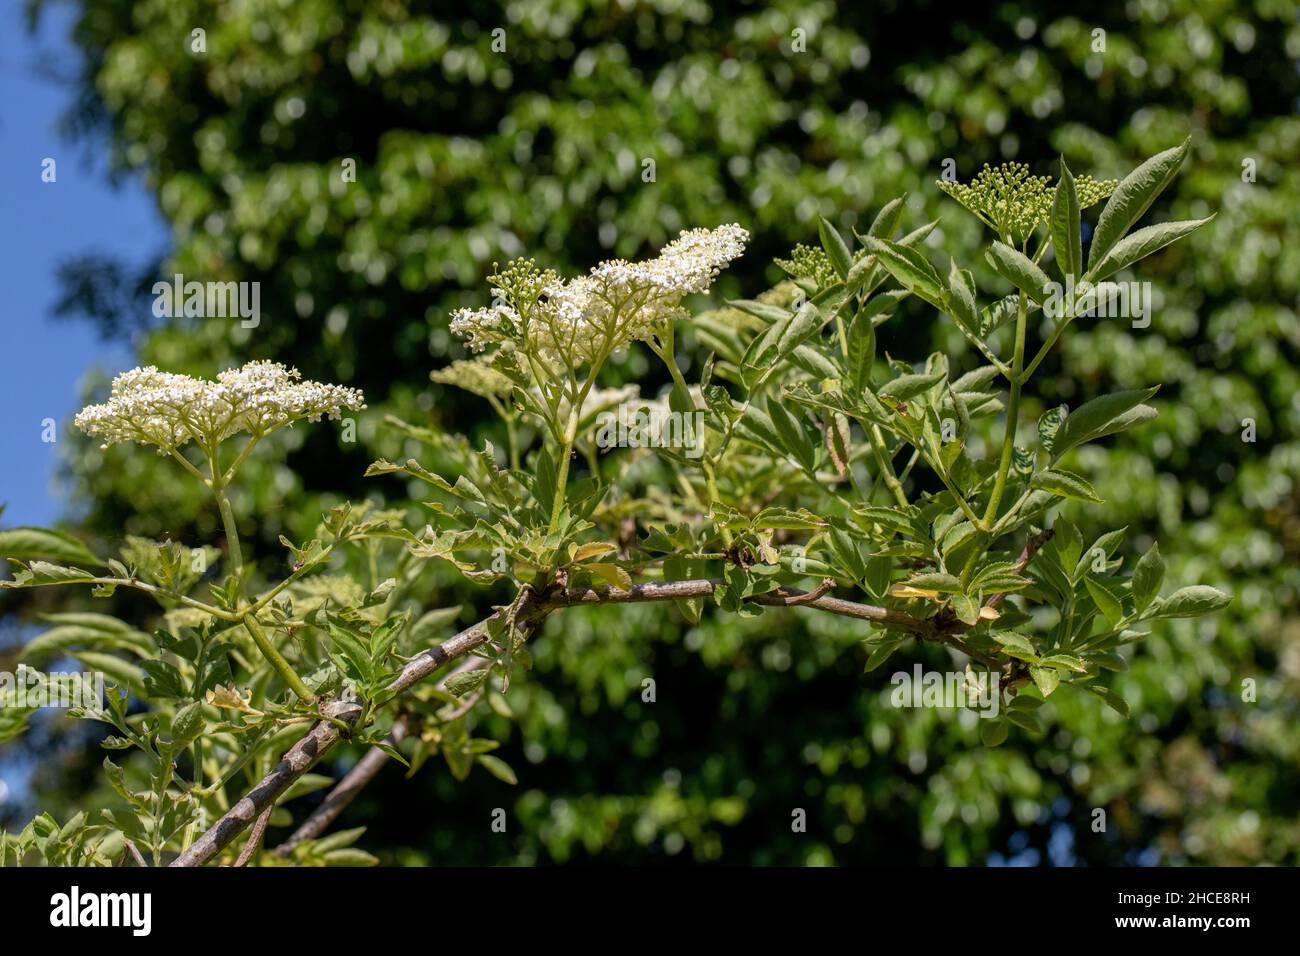 Aîné (Sambucus nigra). En fleur.Têtes de pétale à fleurs blanches plates en forme de parapluie.Pollinisation par les insectes.Flore de bordure des bois.Invertébré recherché Banque D'Images